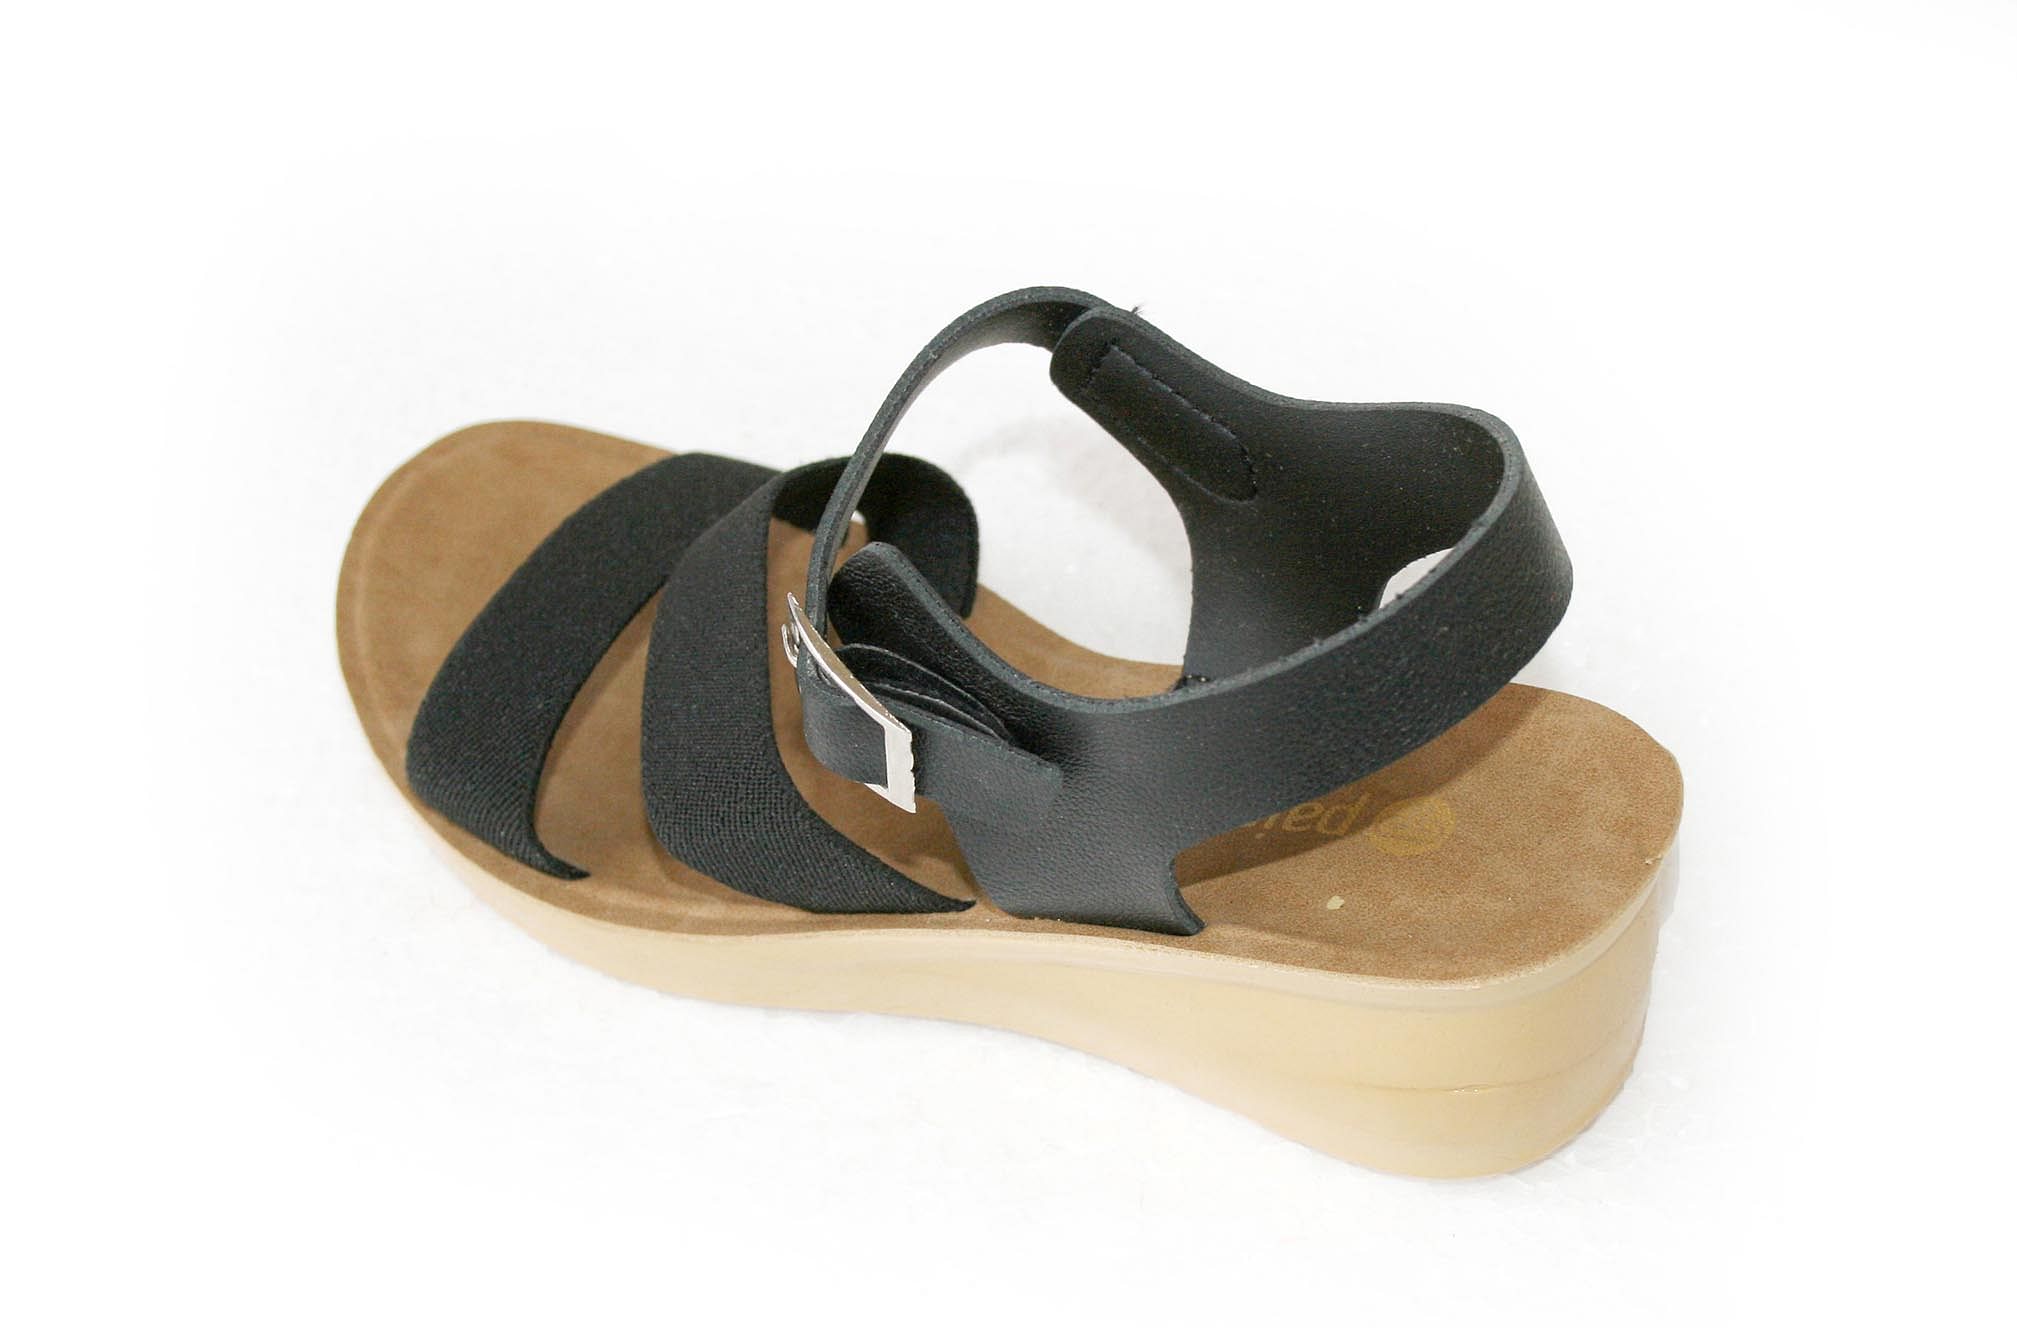 Pair-it Ladies Sandals-Pedals-109-Black